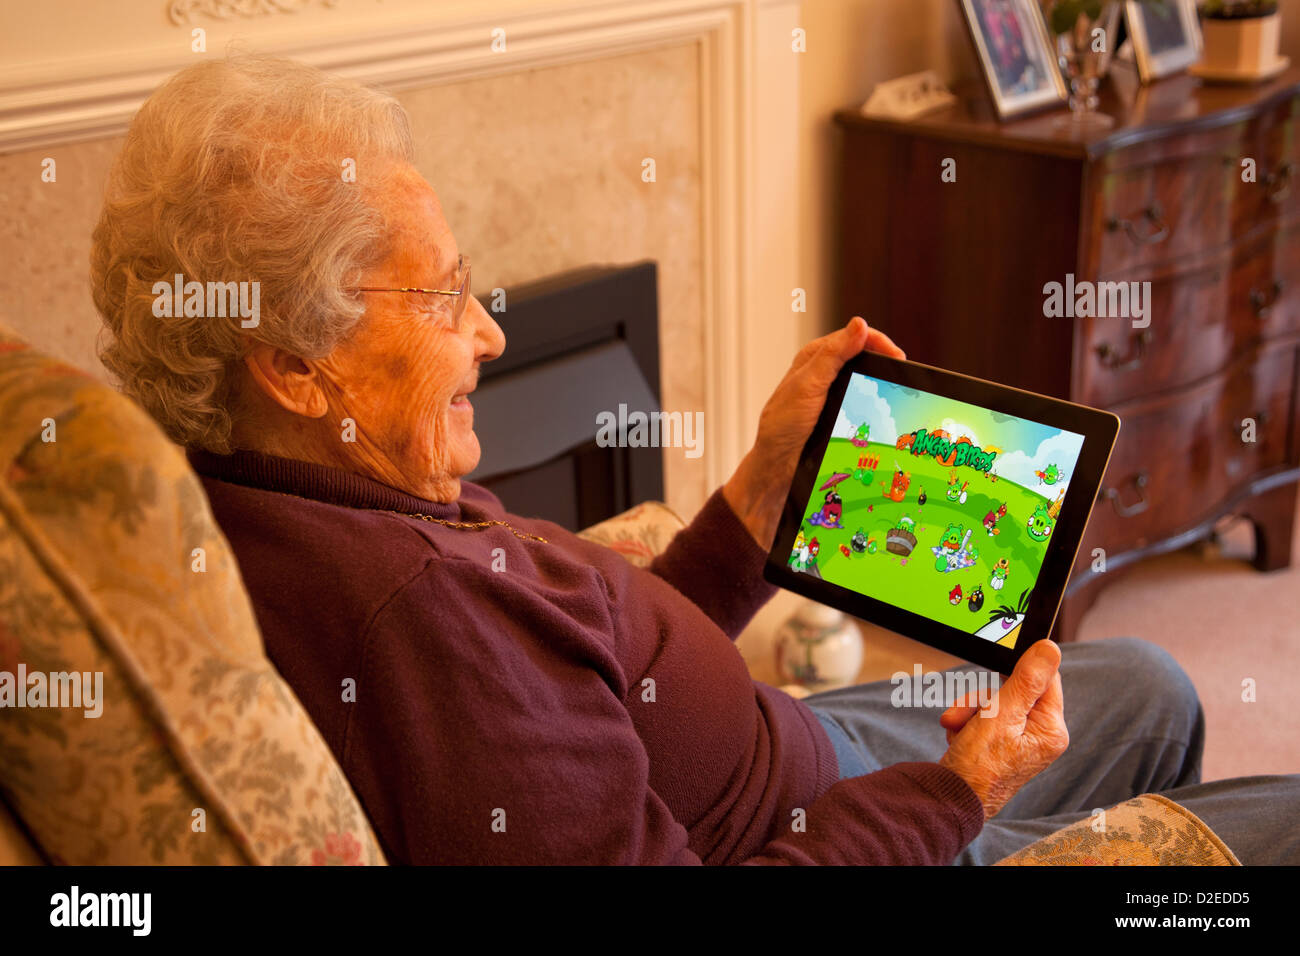 Femme âgée pensionné avec lunettes sur apple ipad tablet relaxing on président jouer Angry Birds jeu informatique Banque D'Images